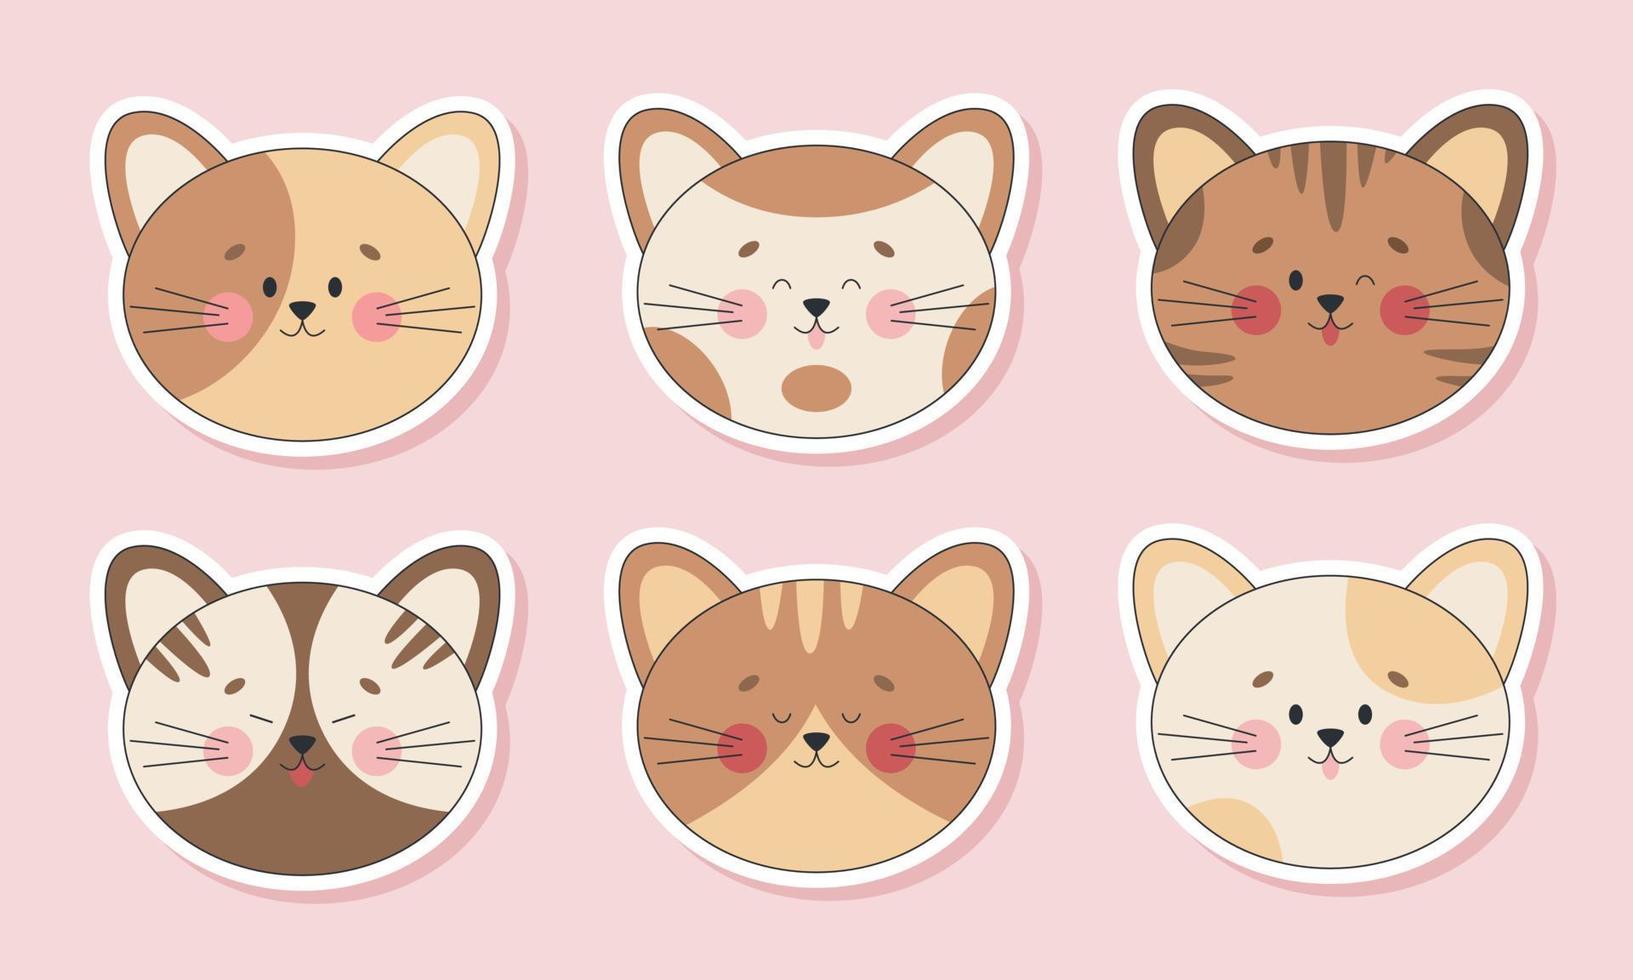 conjunto de pegatinas de cabezas de gato lindo. Caras de gatito kawaii con diferentes emociones aisladas. vector plano con un contorno.